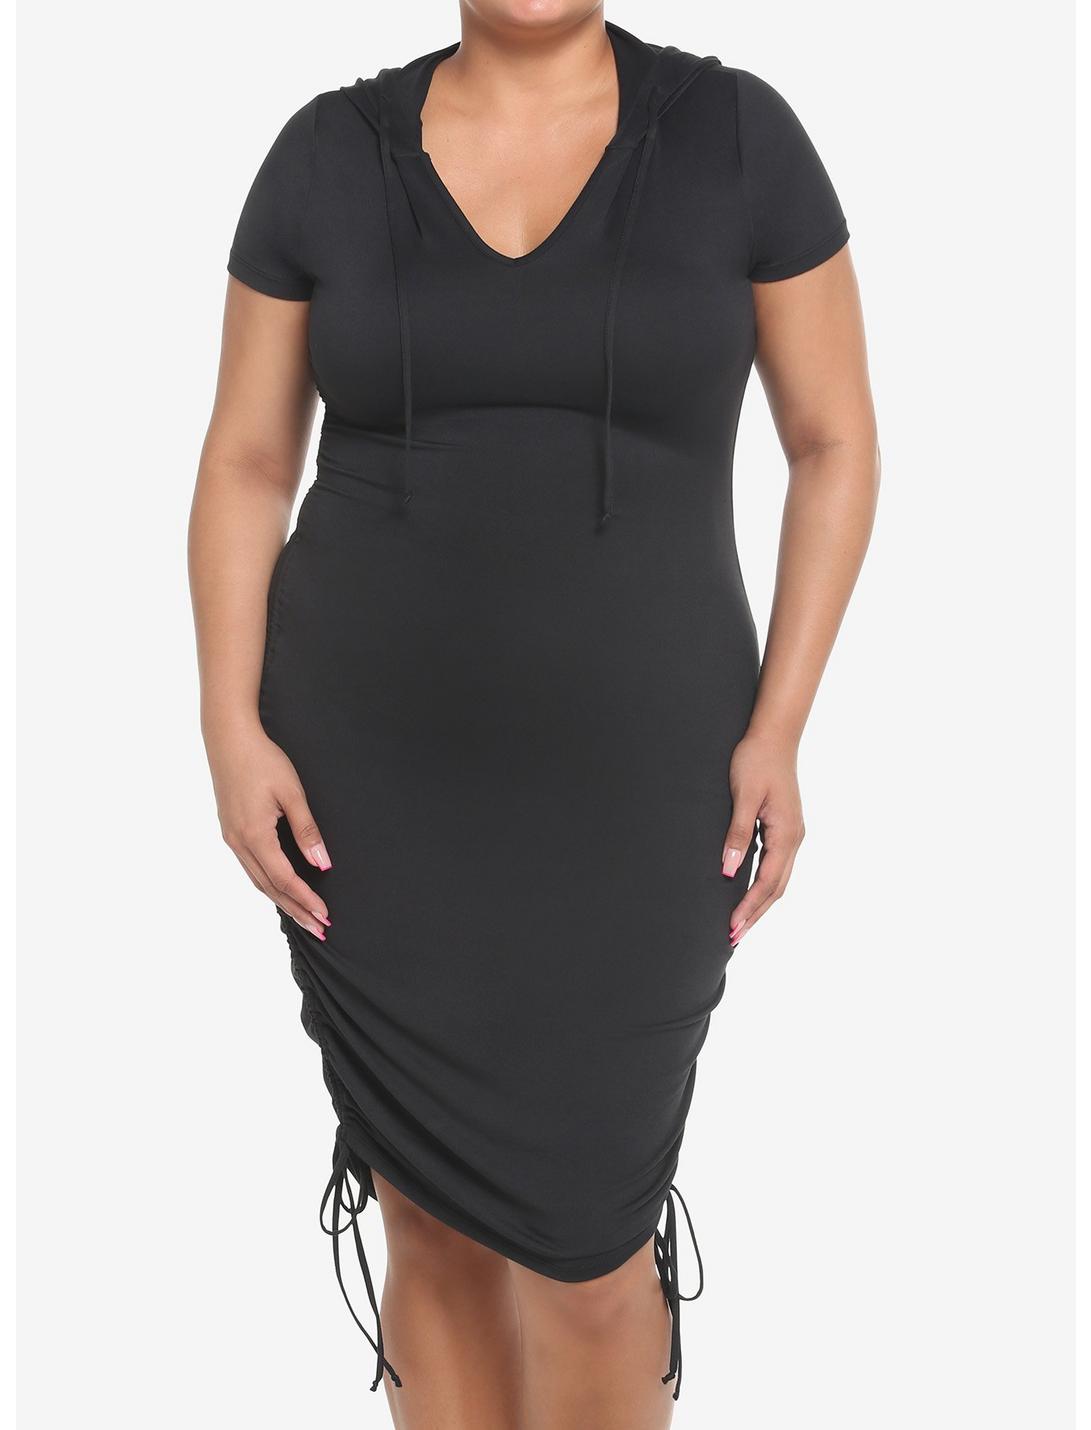 Black Ruched Hooded Dress Plus Size, BLACK, hi-res